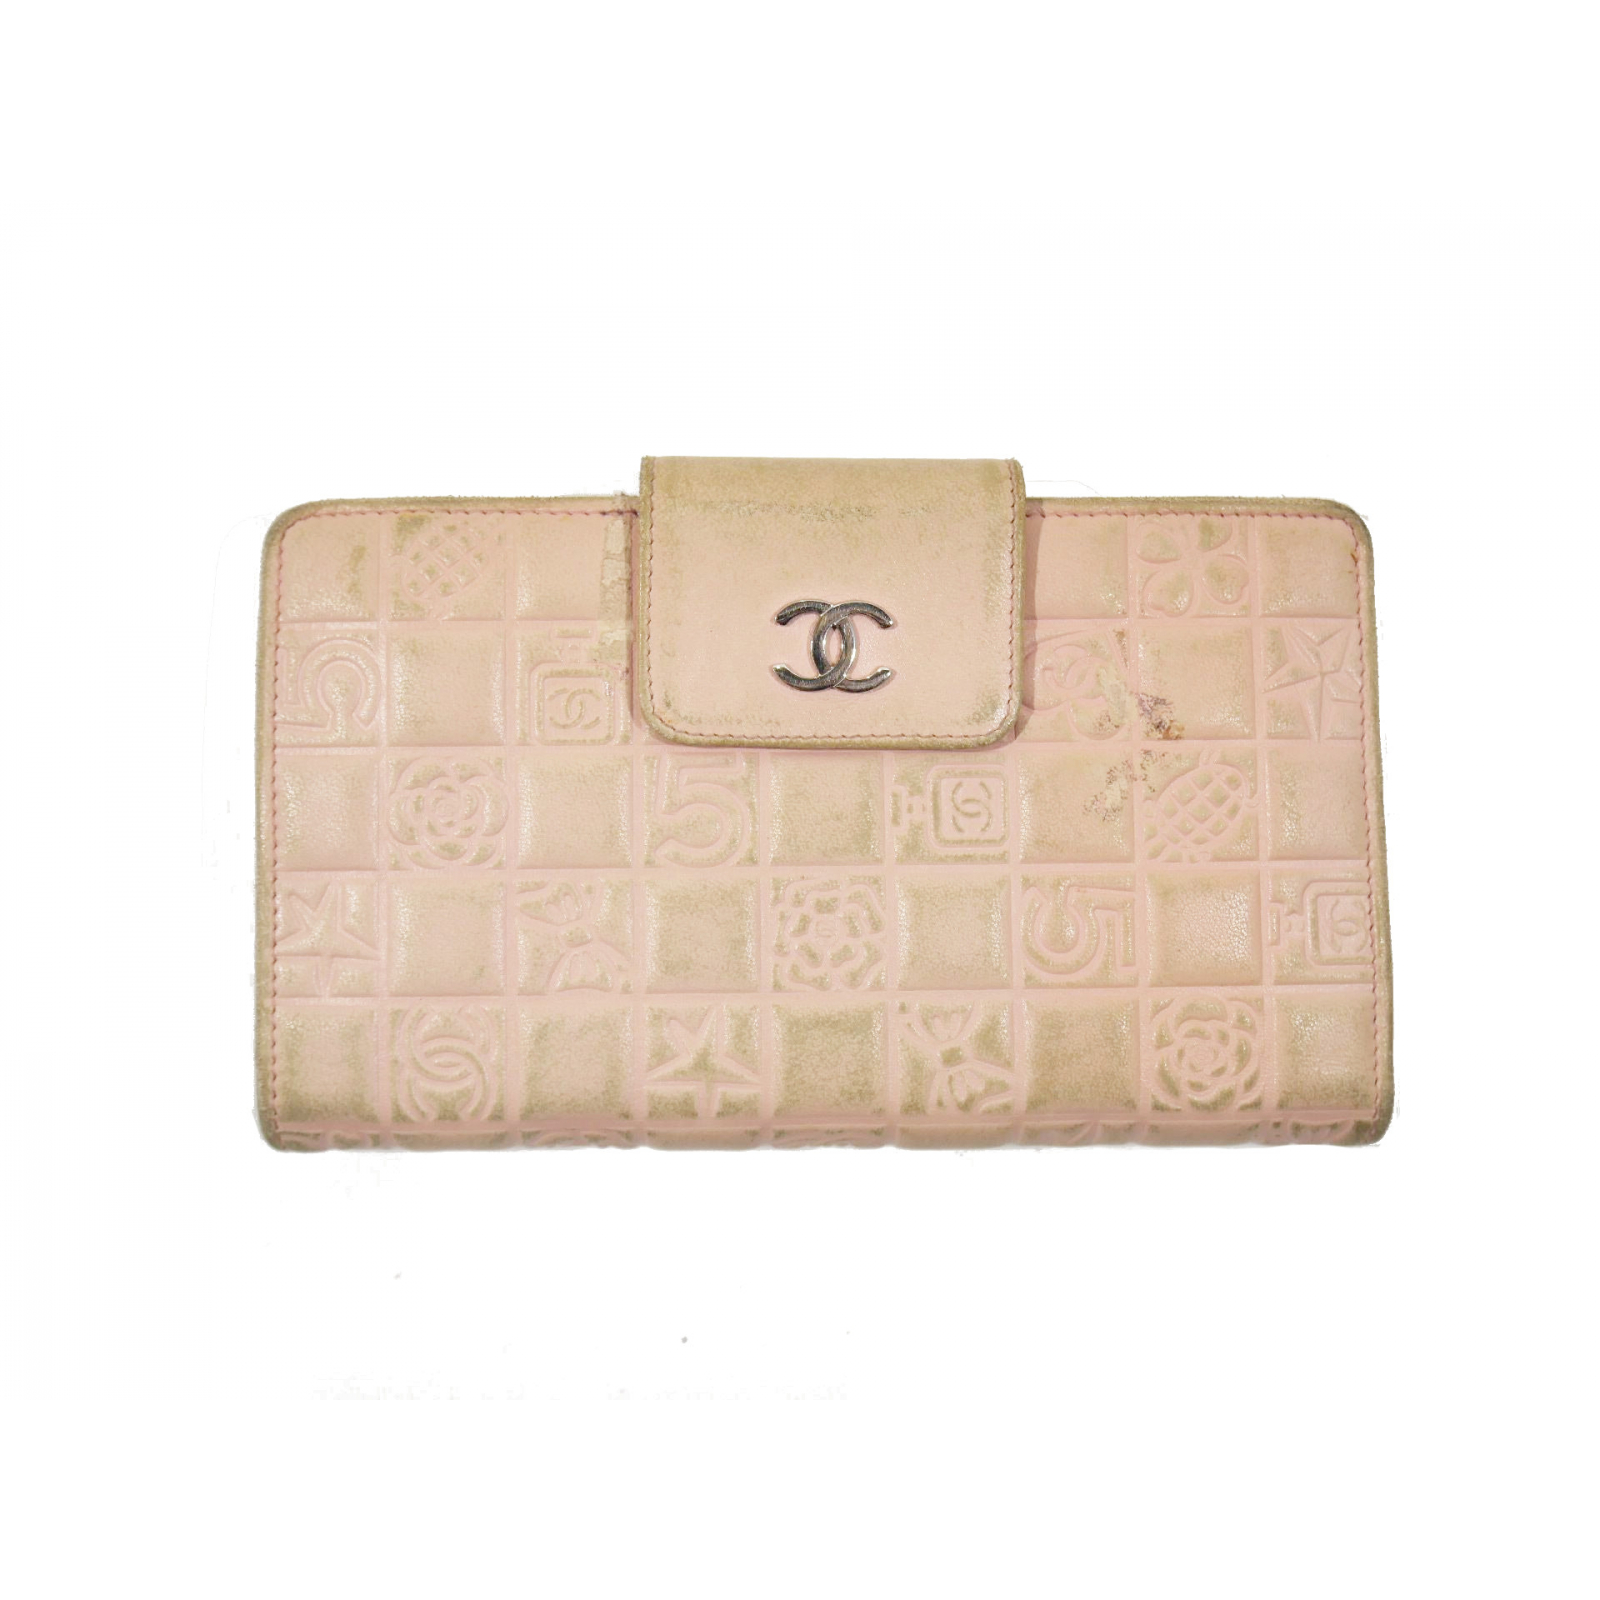 Chanel portfel precious symbols